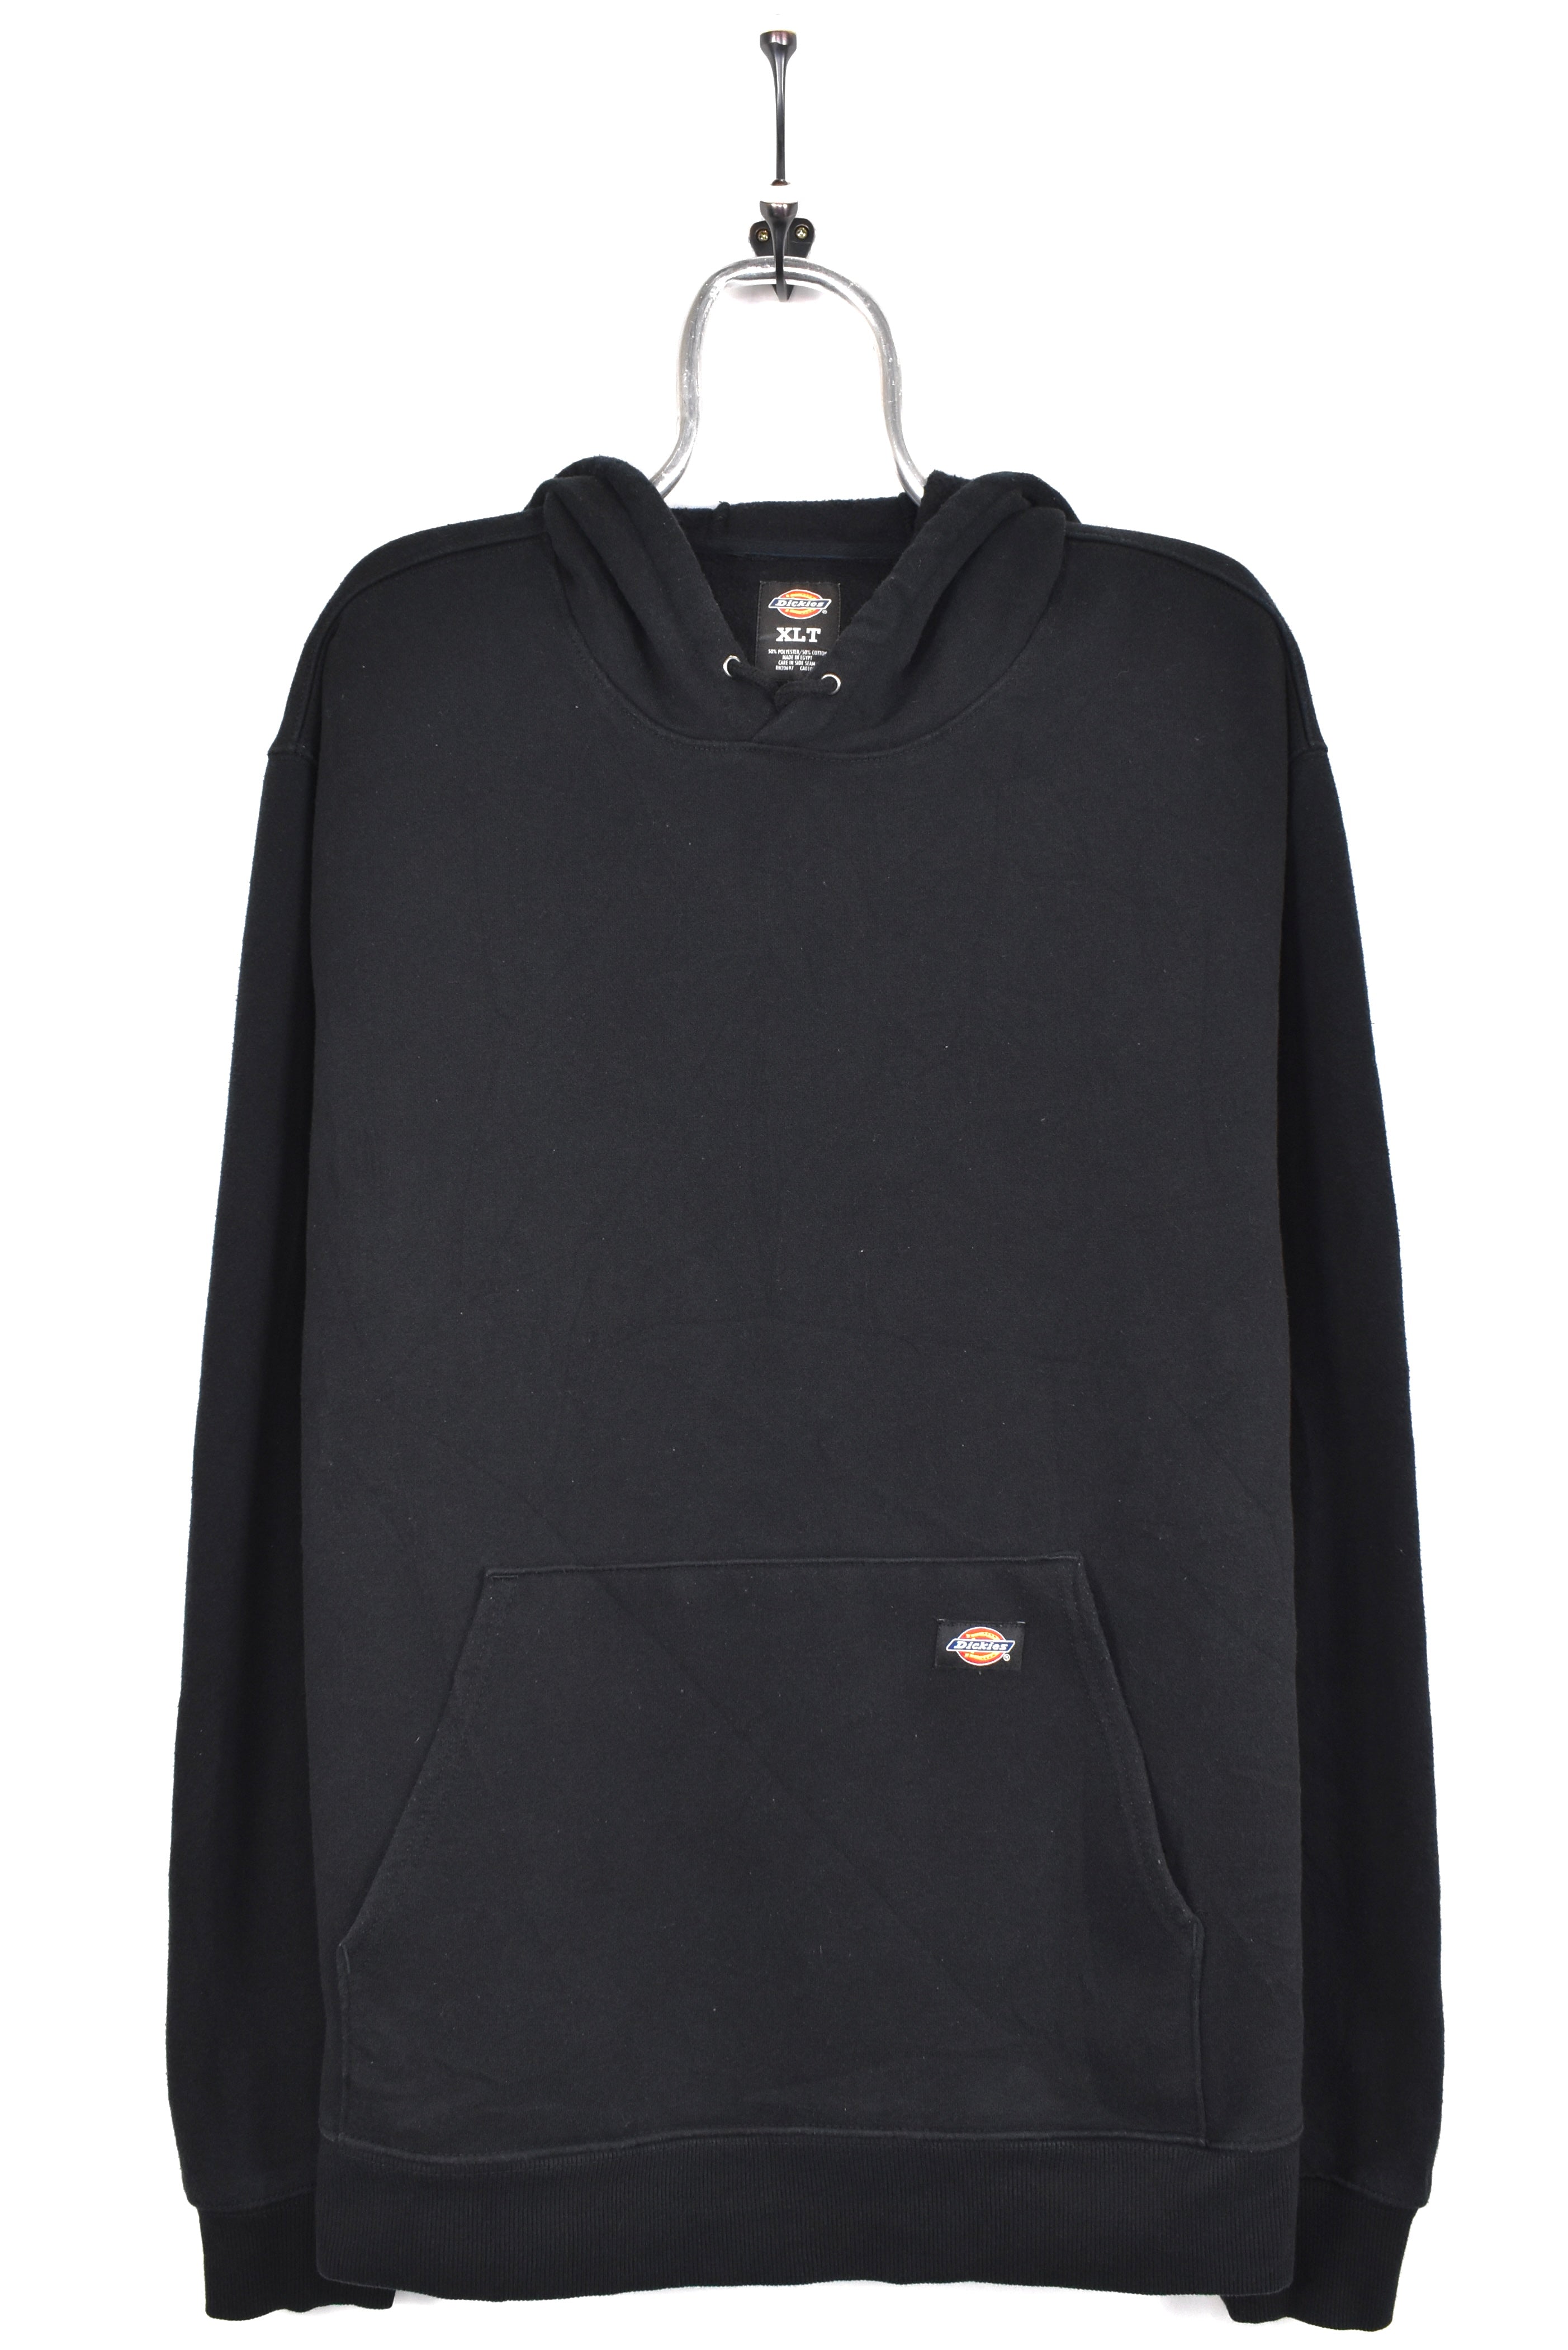 Vintage Dickies hoodie, black basic sweatshirt - AU XL DICKIES